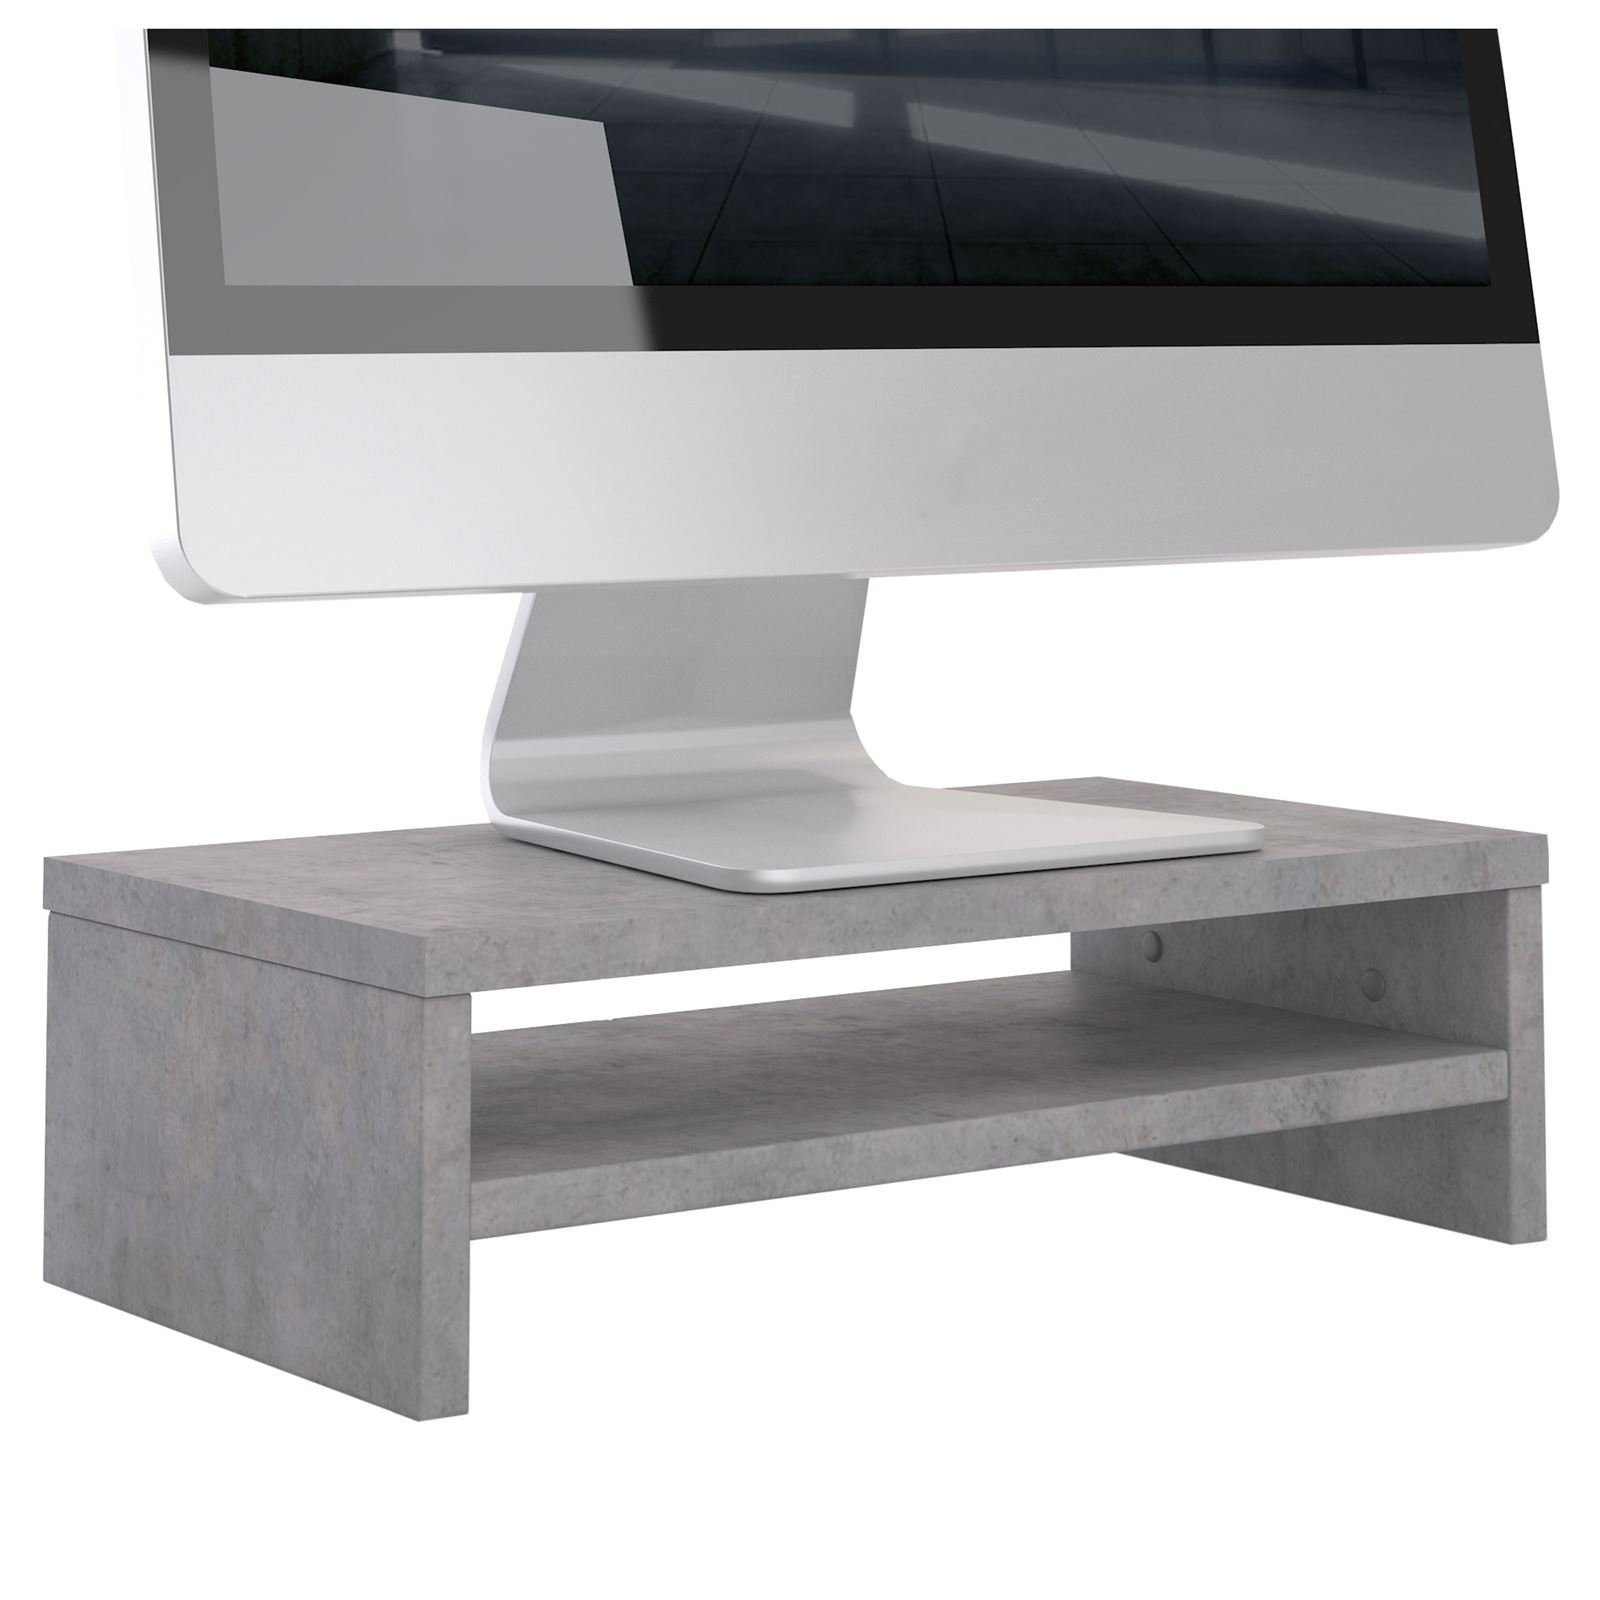 CARO-Möbel Schreibtischaufsatz SUBIDA, Bildschirmaufsatz Monitorständer Monitorerhöhung inkl. Ablagefach Be Betonoptik